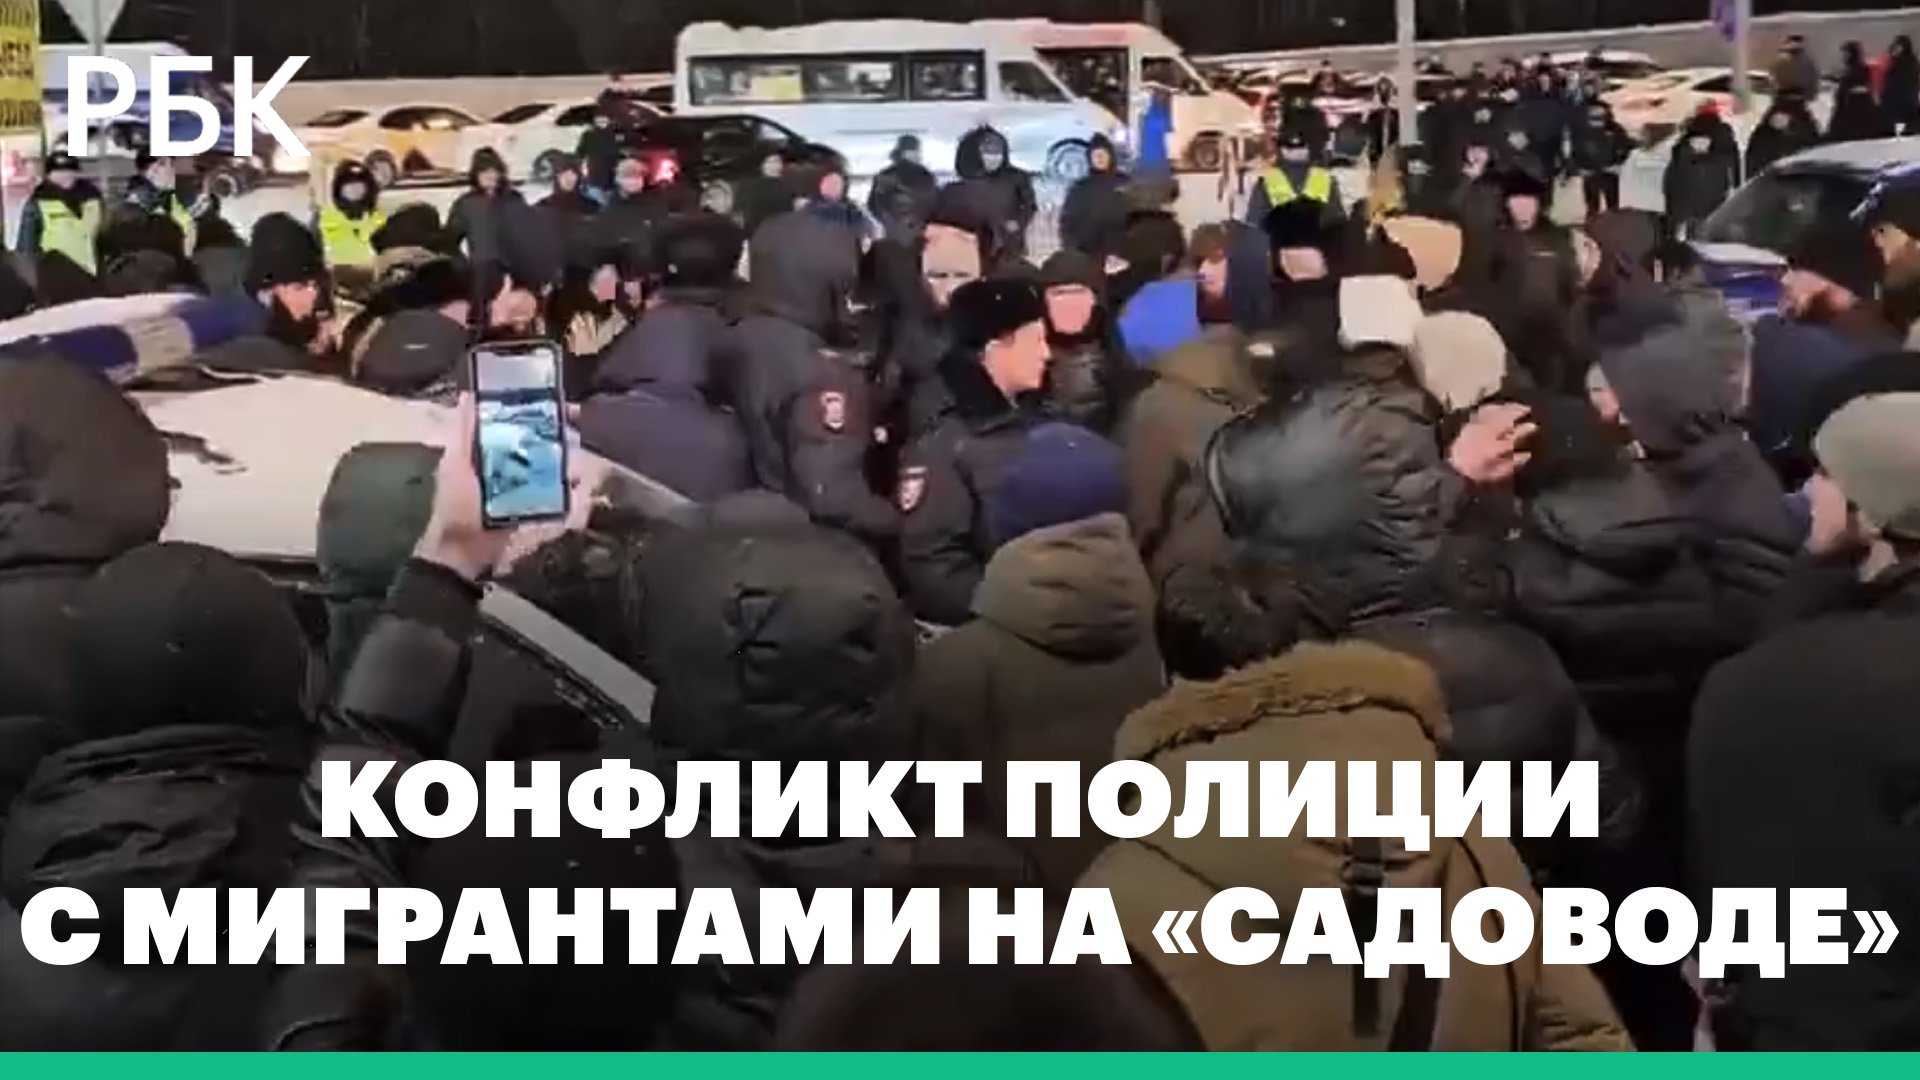 МВД задержало 82 человека после конфликта с полицейскими на «Садоводе» в Москве